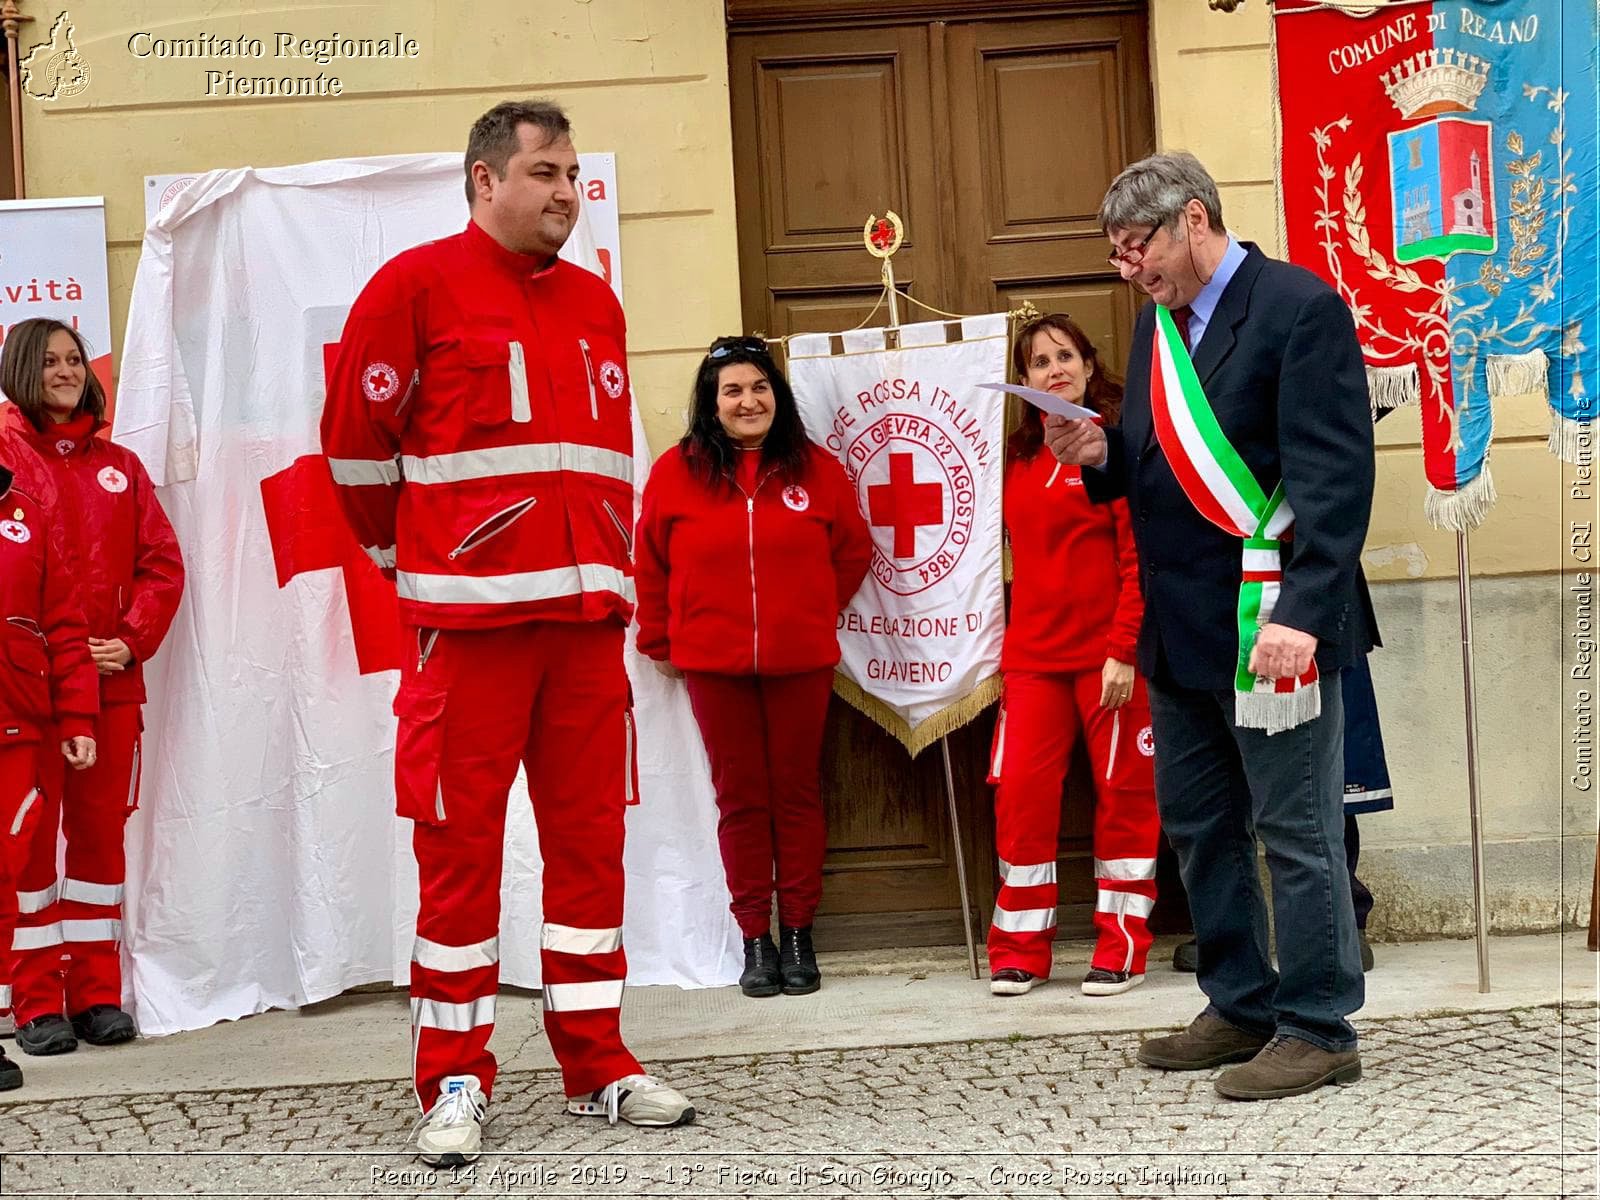 Reano 14 Aprile 2019 - 13 Fiera di San Giorgio - Croce Rossa Italiana - Comitato Regionale del Piemonte